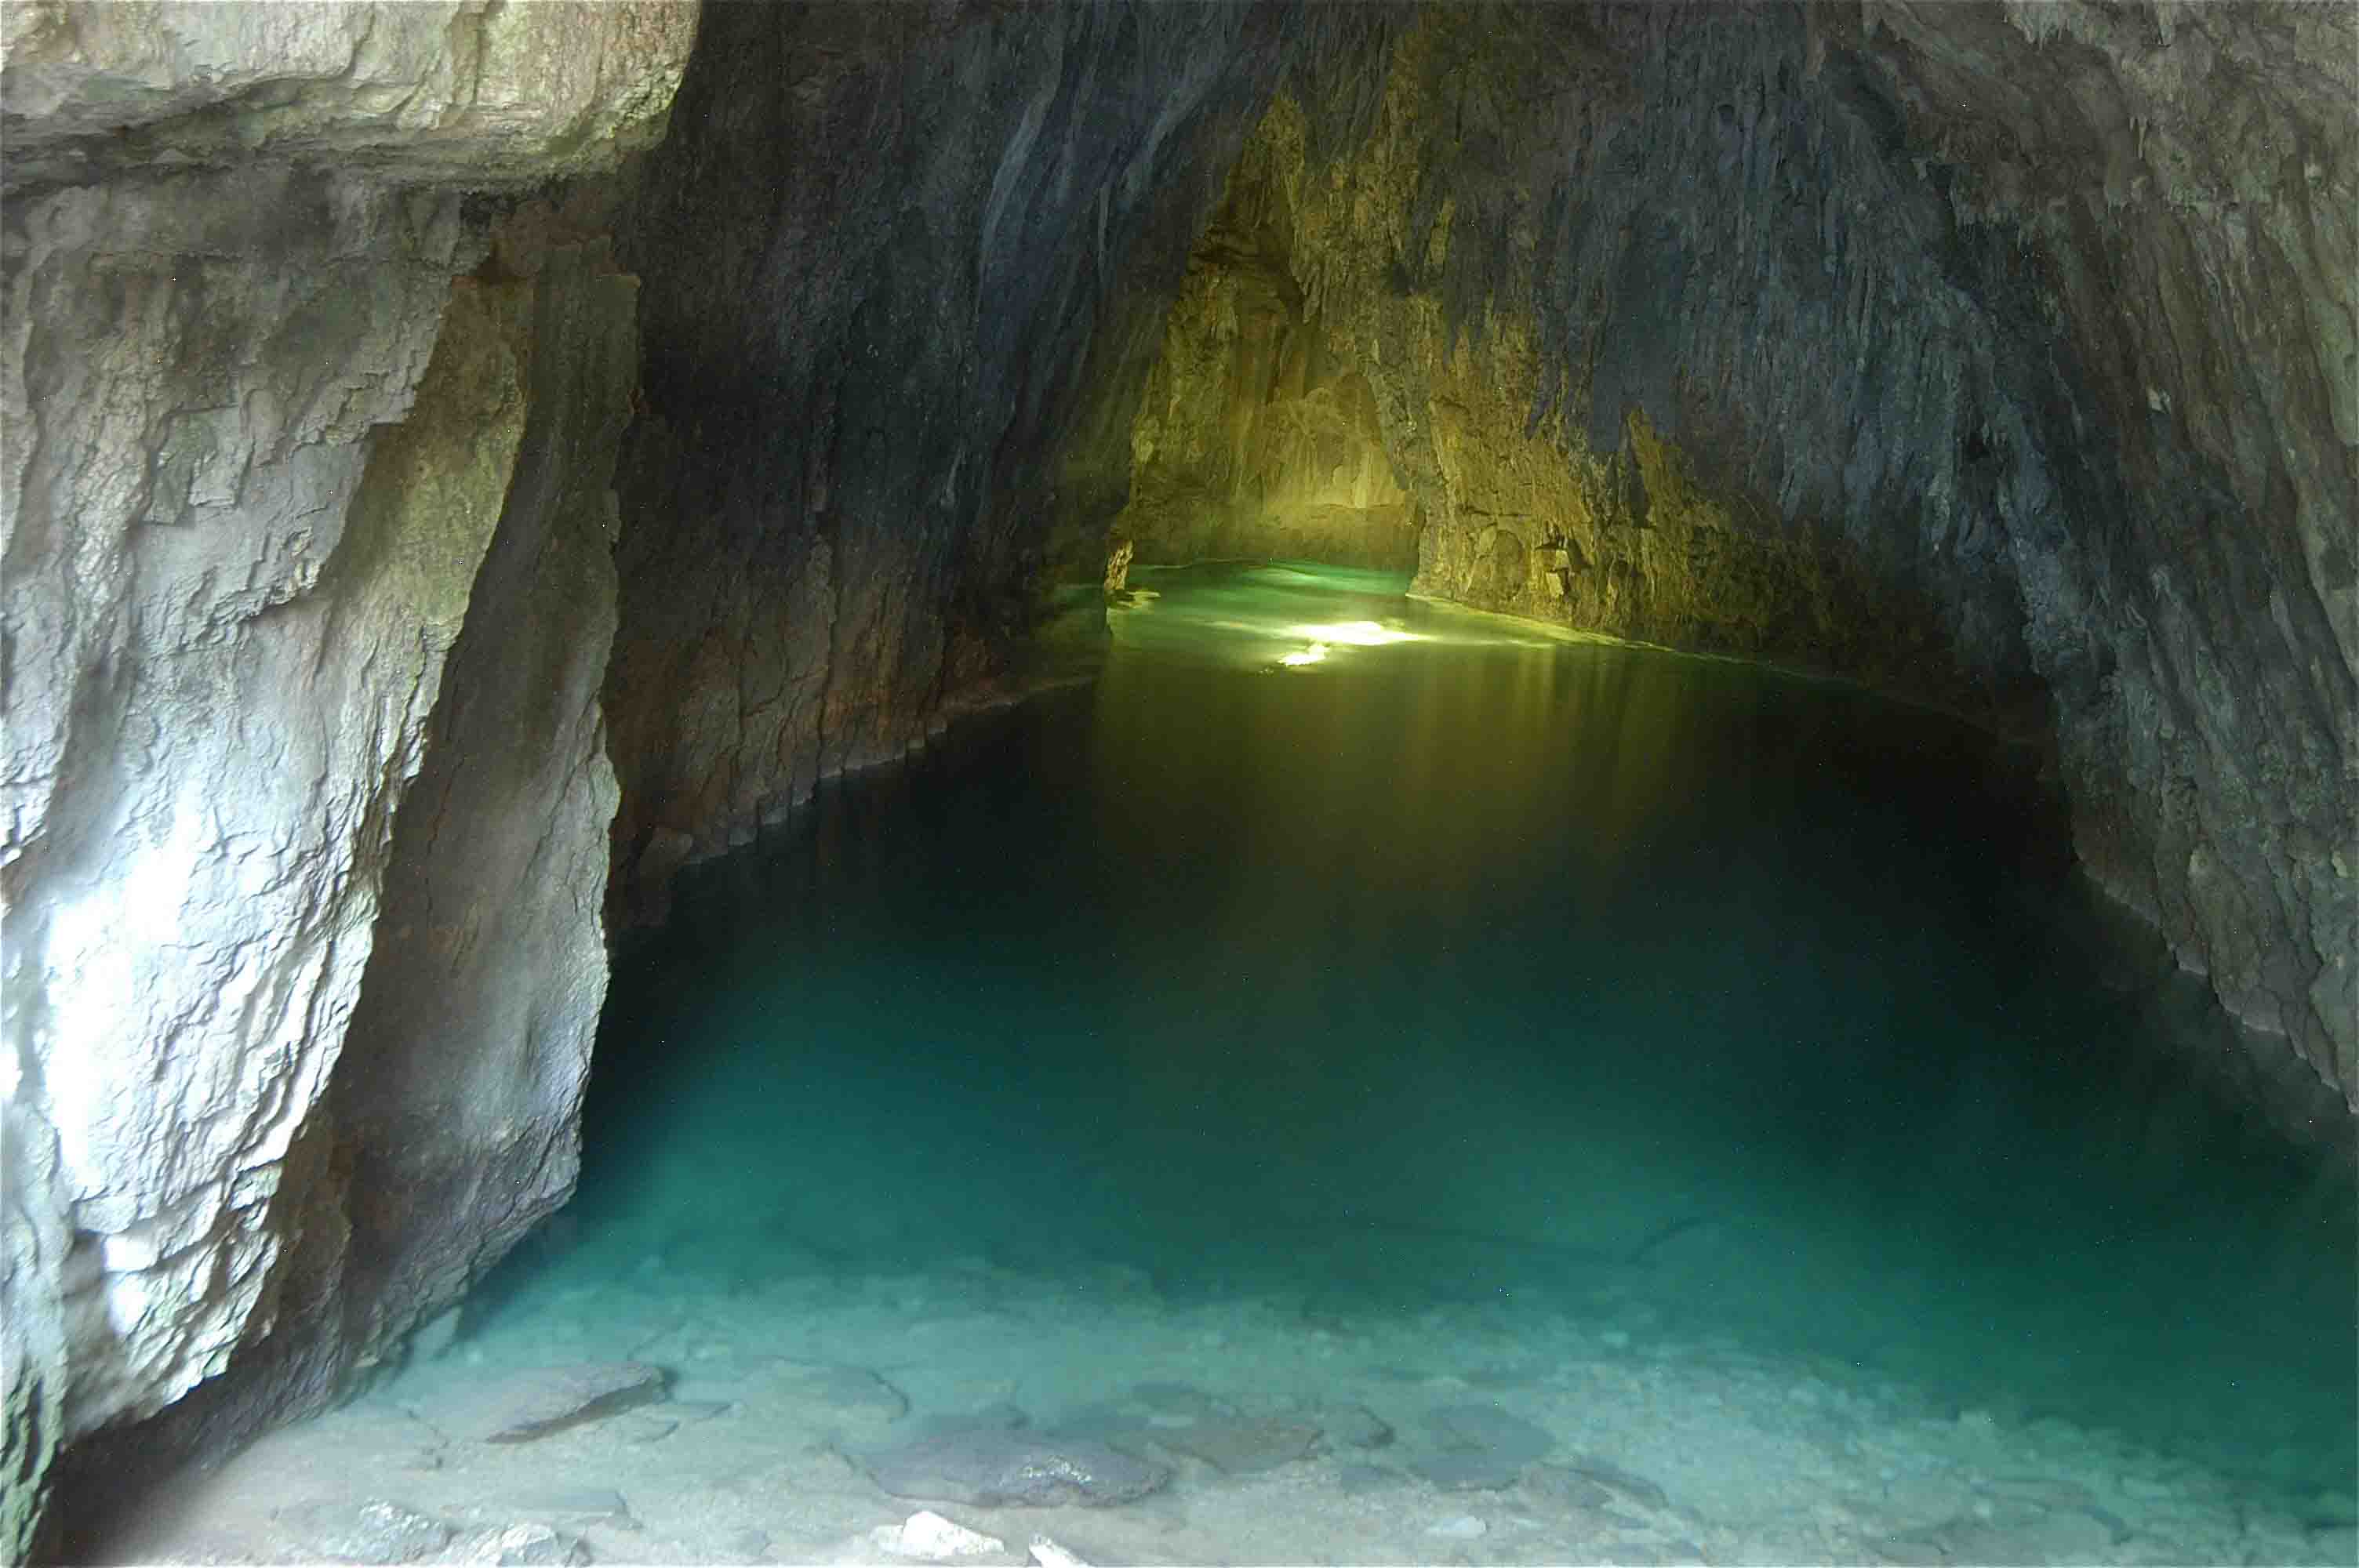 Grotte de Thaïs